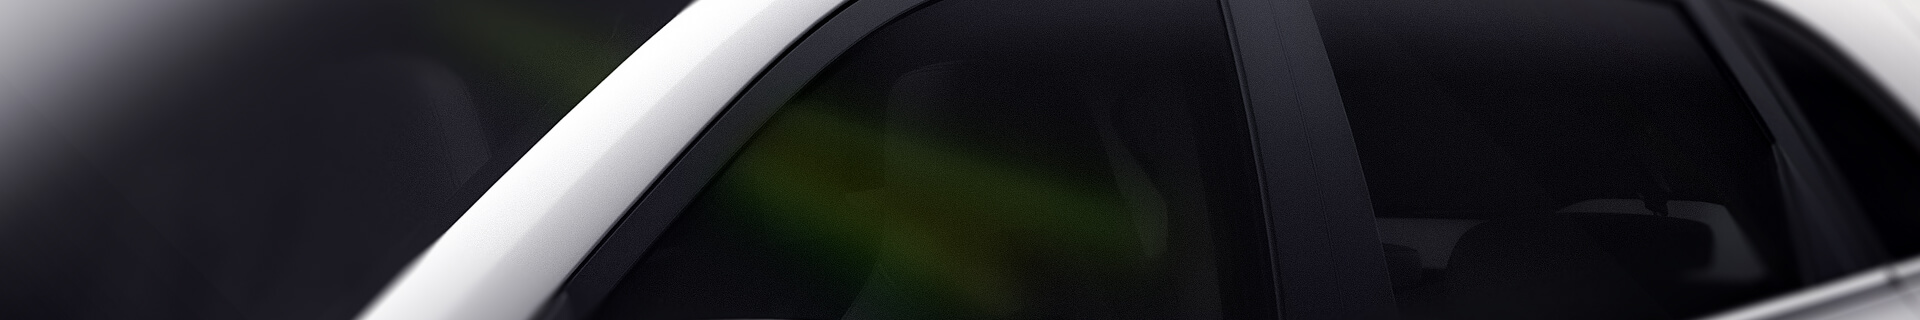 Car window film